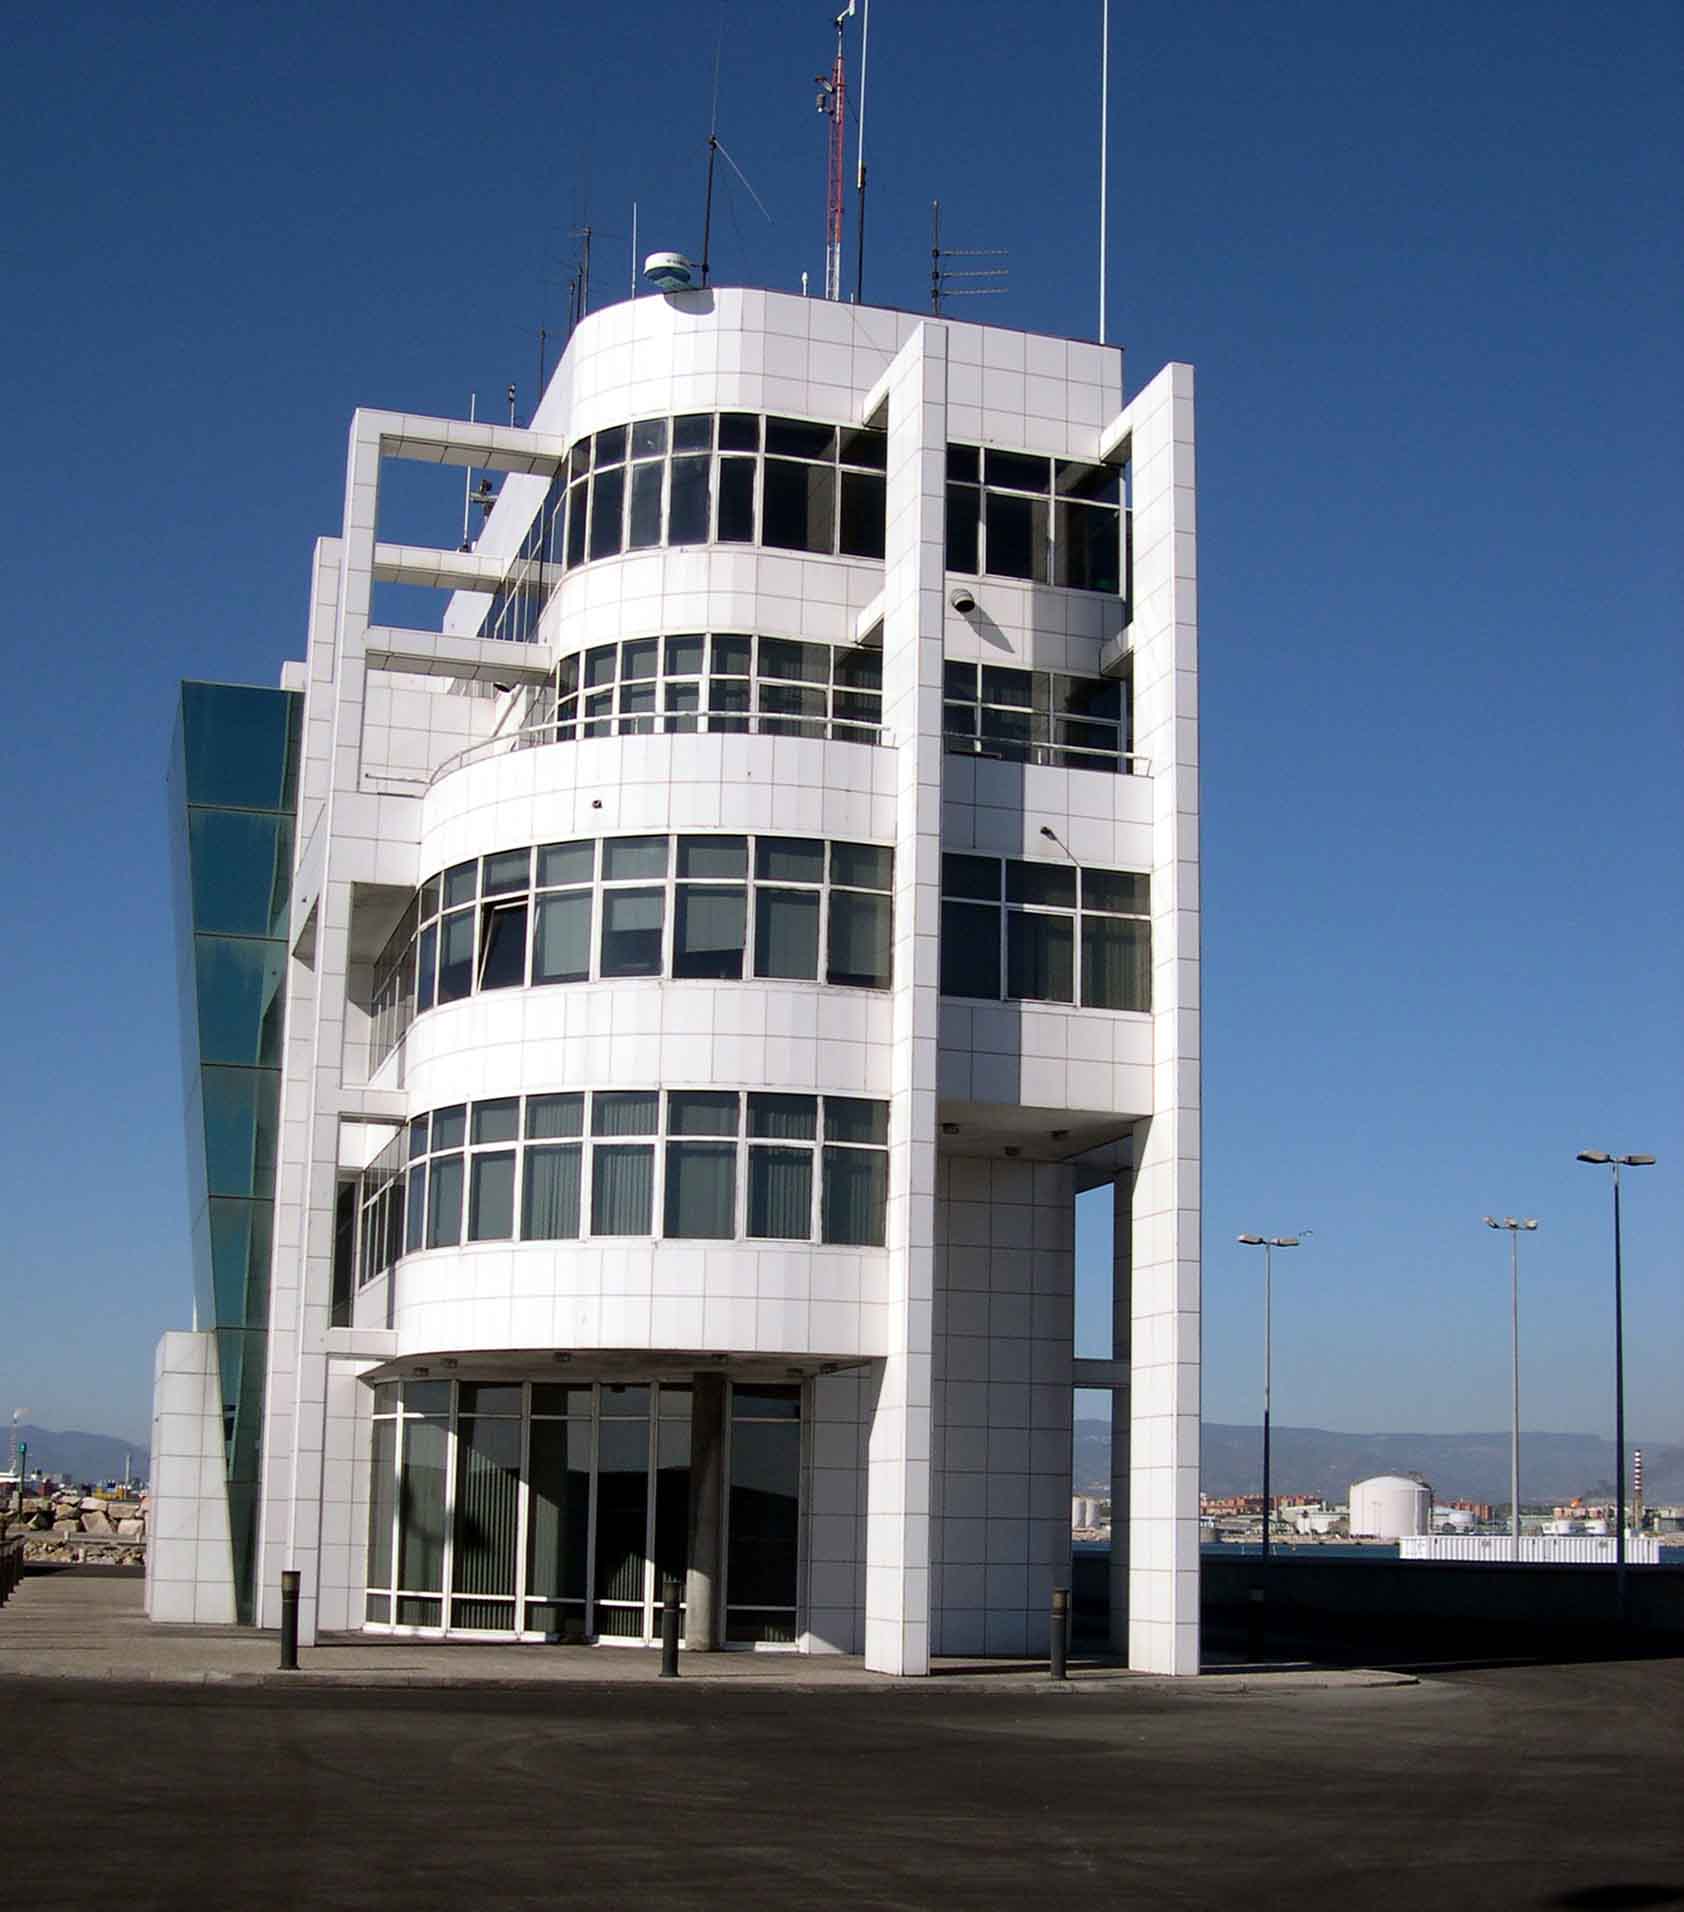 Centro de coordinación de salvamento Tarragona por fuera